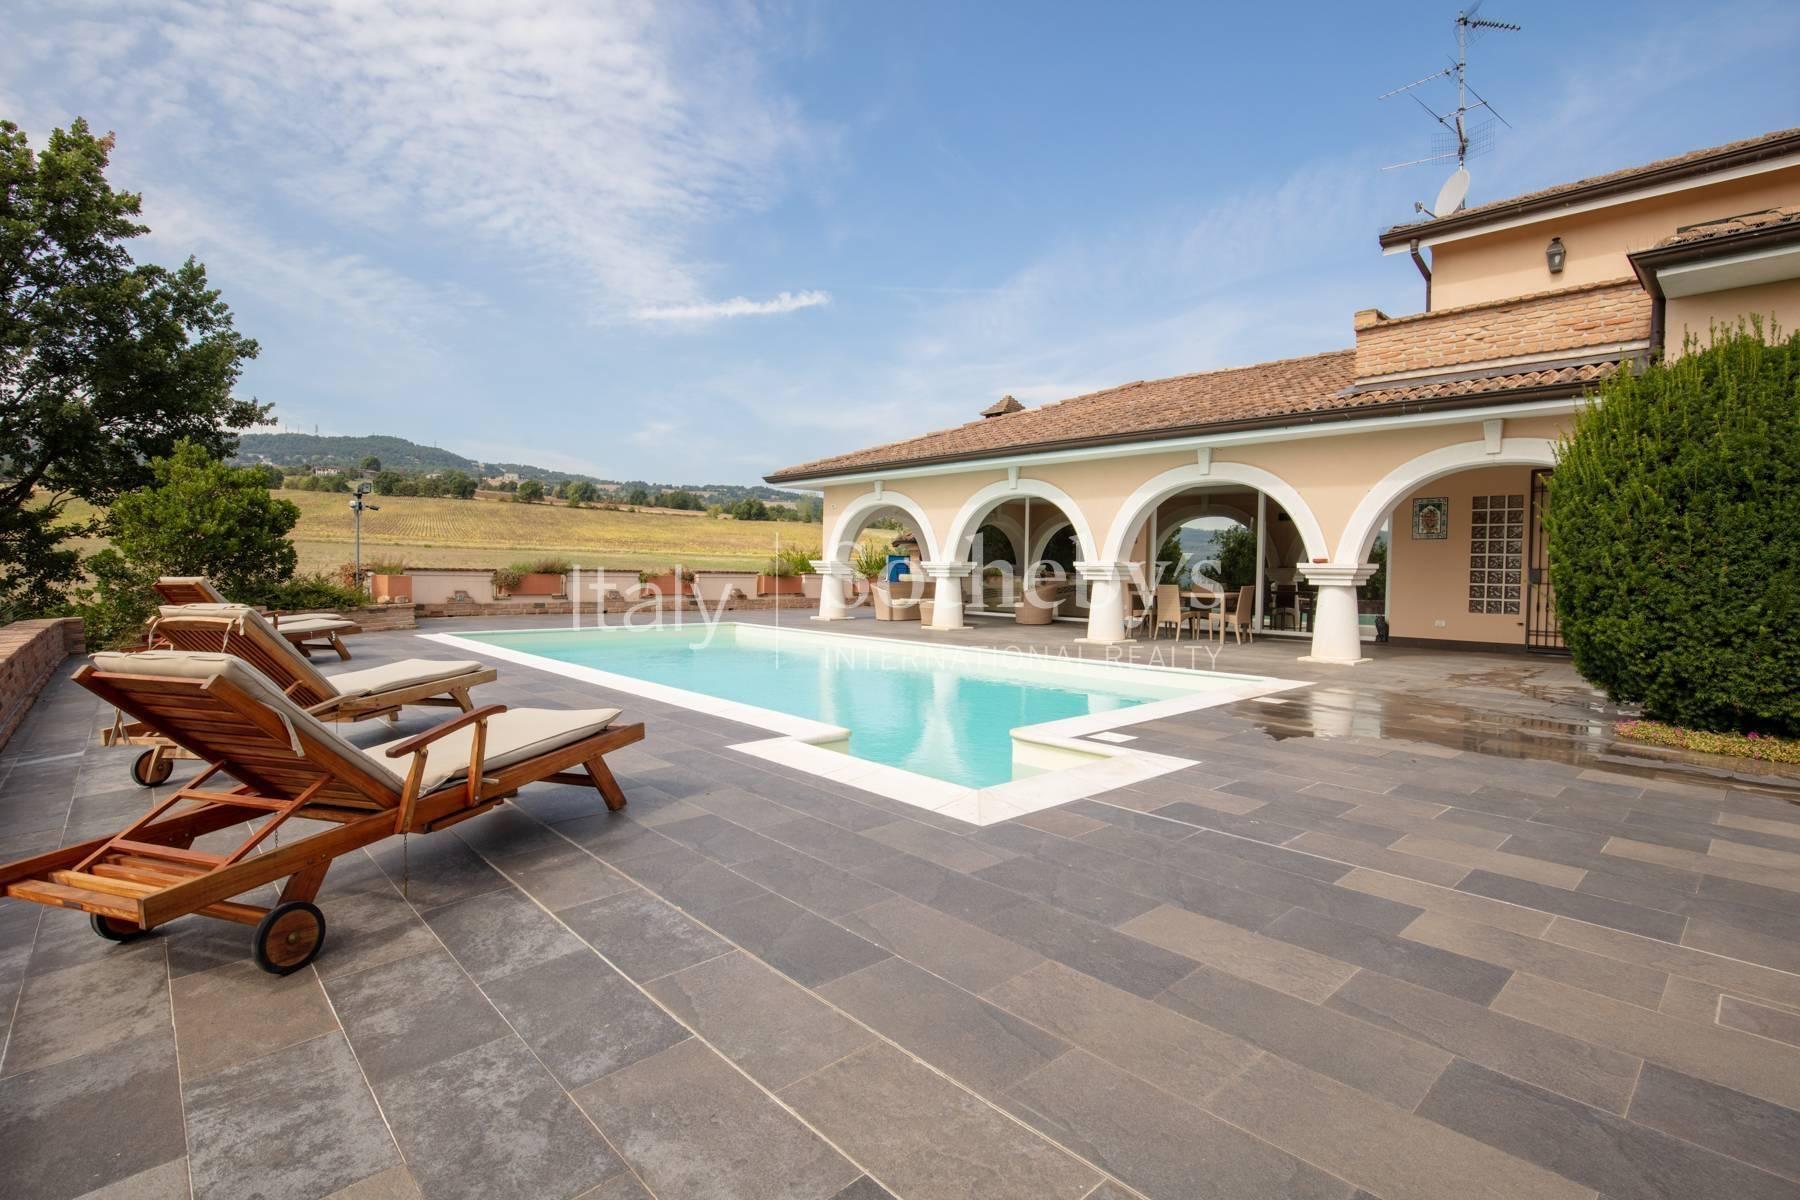 Splendida villa con piscina sui colli di Piacenza - 2